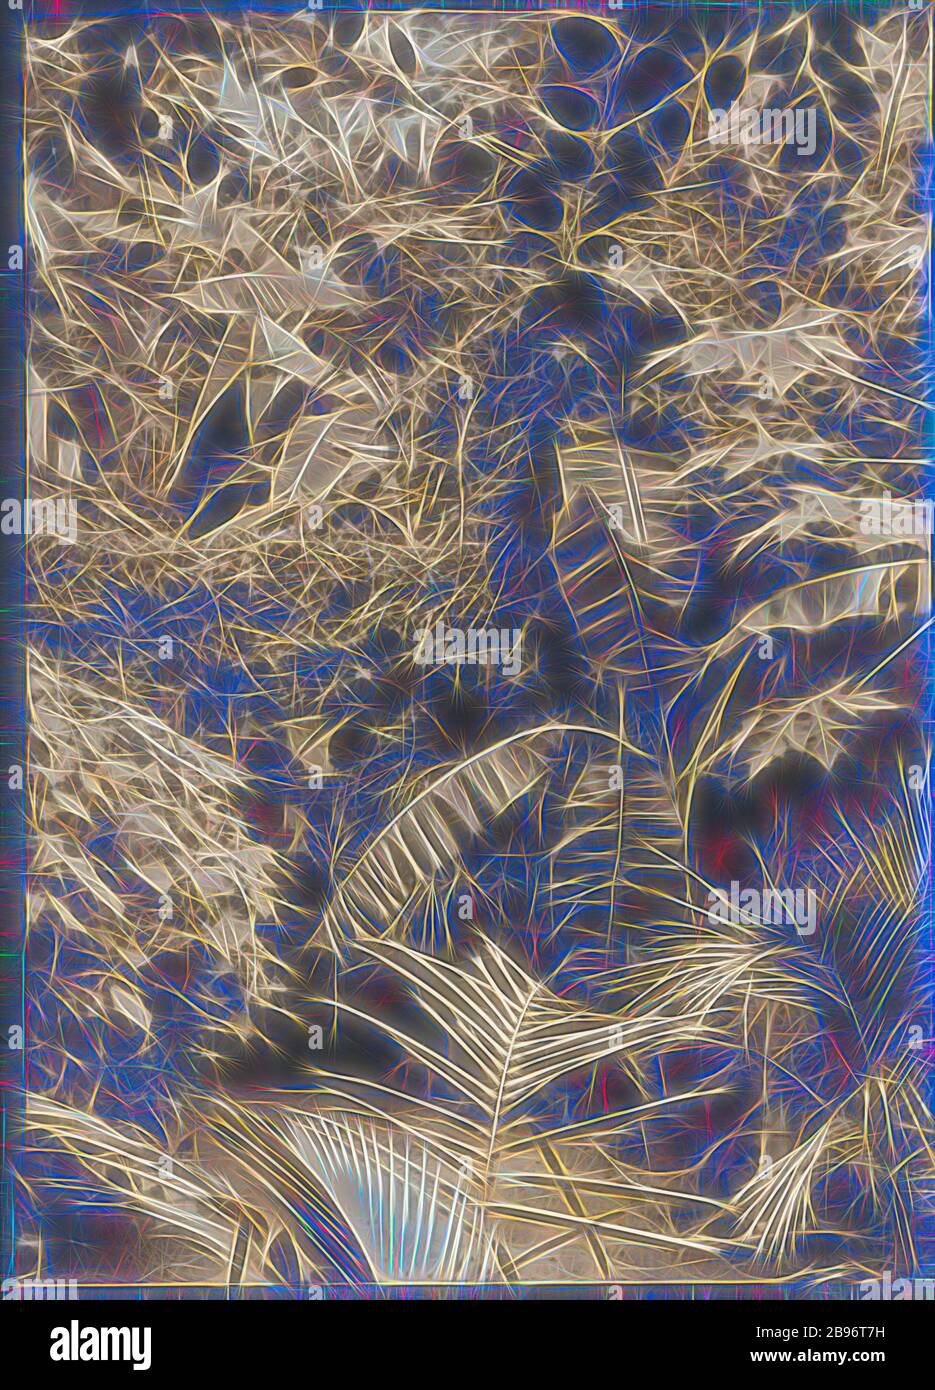 Foto, Back Garden with Arbour, Kodak Branch, Townsville, QLD, 1930er Jahre, Sepia Toned Fotografieren Sie den Garten hinter dem Kodak Australasia Pty Ltd Filialgeschäft und dem Verarbeitungslabor am selben Tag in der Flinders St, Townsville, Queensland, in den 1930er Jahren. Auf diesem Foto können Sie nur die Wege sehen, die durch dichtes tropisches Laub führen, einschließlich Palmen und Bananen. Die Reben verlaufen über eine Laube oder Pergola, die einen Teil des Weges abdeckt. Dieses Kodak Geschäft wurde von Gibon neu gestaltet, Design von warmen fröhlich glühenden Helligkeit und Lichtstrahlen Ausstrahlung gebaut. Klassische Kunst mit einem Modder neu erfunden Stockfoto